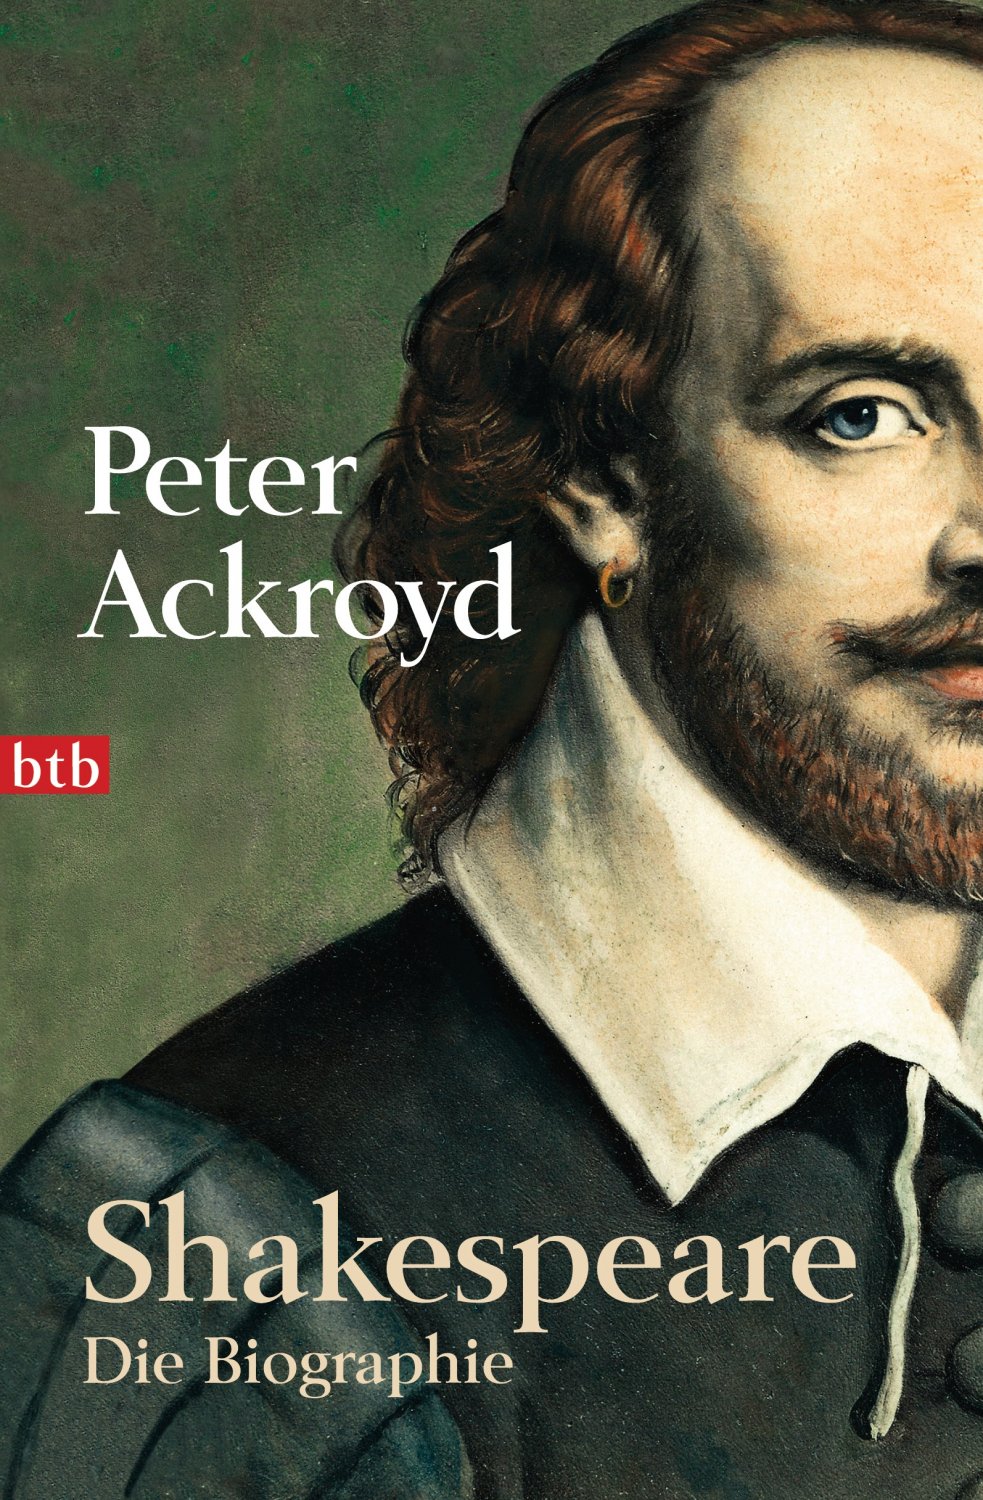 Peter-Ackroyd+Shakespeare-Die-Biographie.jpg